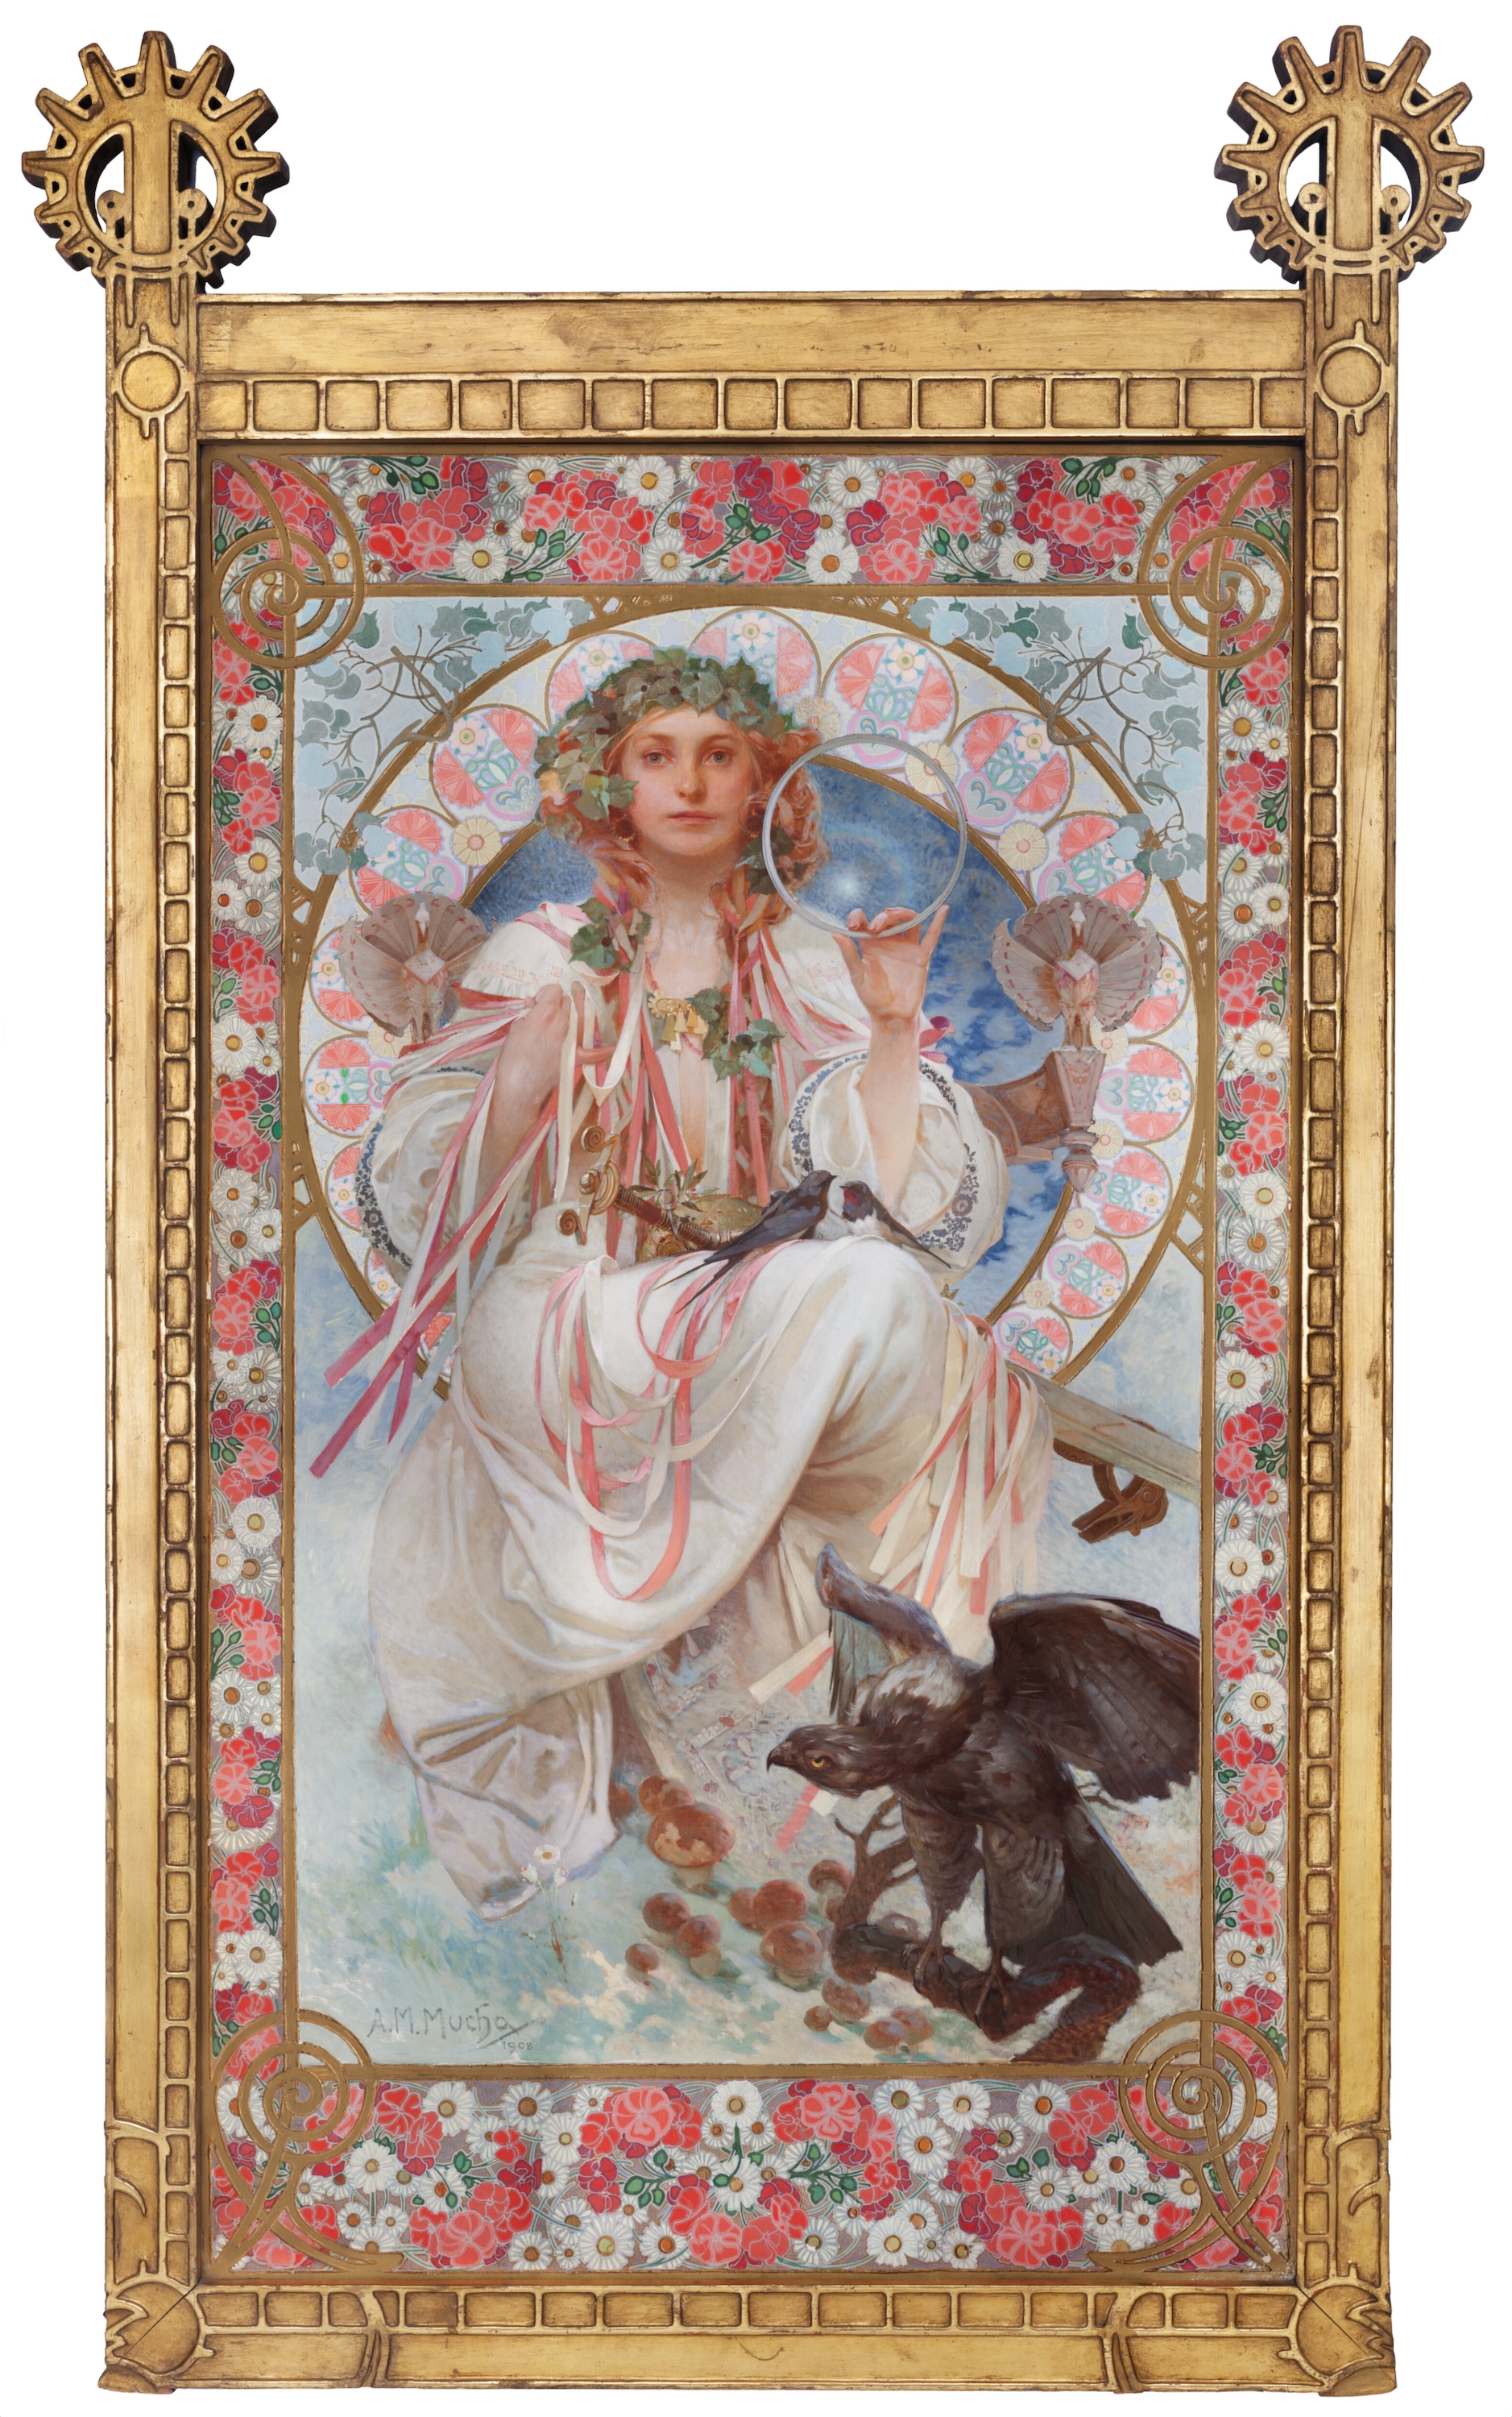 约瑟芬·克莱恩·布拉德利扮成斯拉夫的肖像 by 阿方斯 慕夏 - 1908 - 154 x 92.5 厘米 